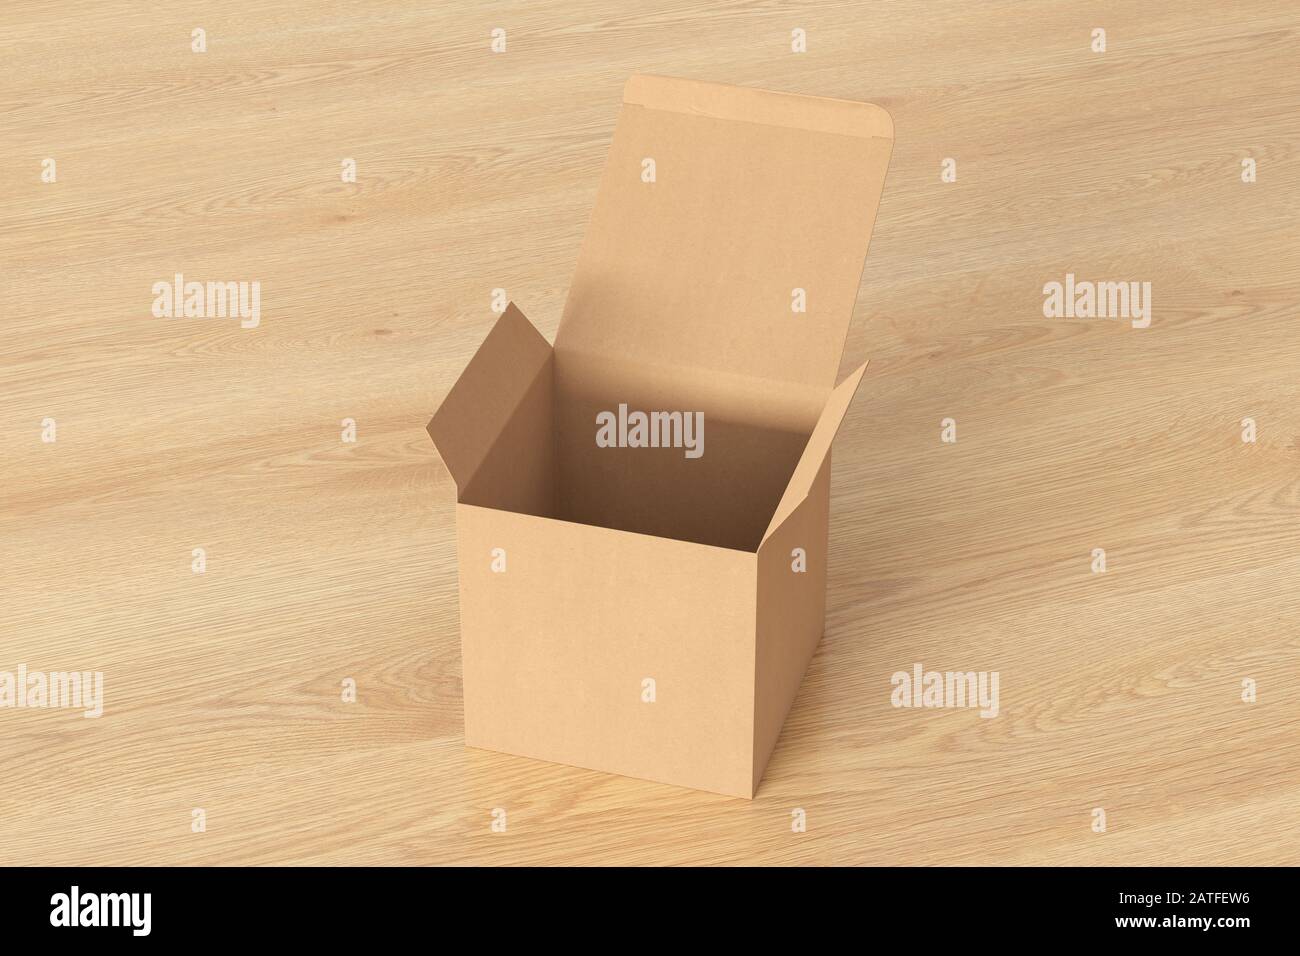 Boîte cadeau cube en carton vierge avec couvercle à rabat articulé ouvert sur fond en bois. Chemin de détourage autour de la maquette de boîte Banque D'Images